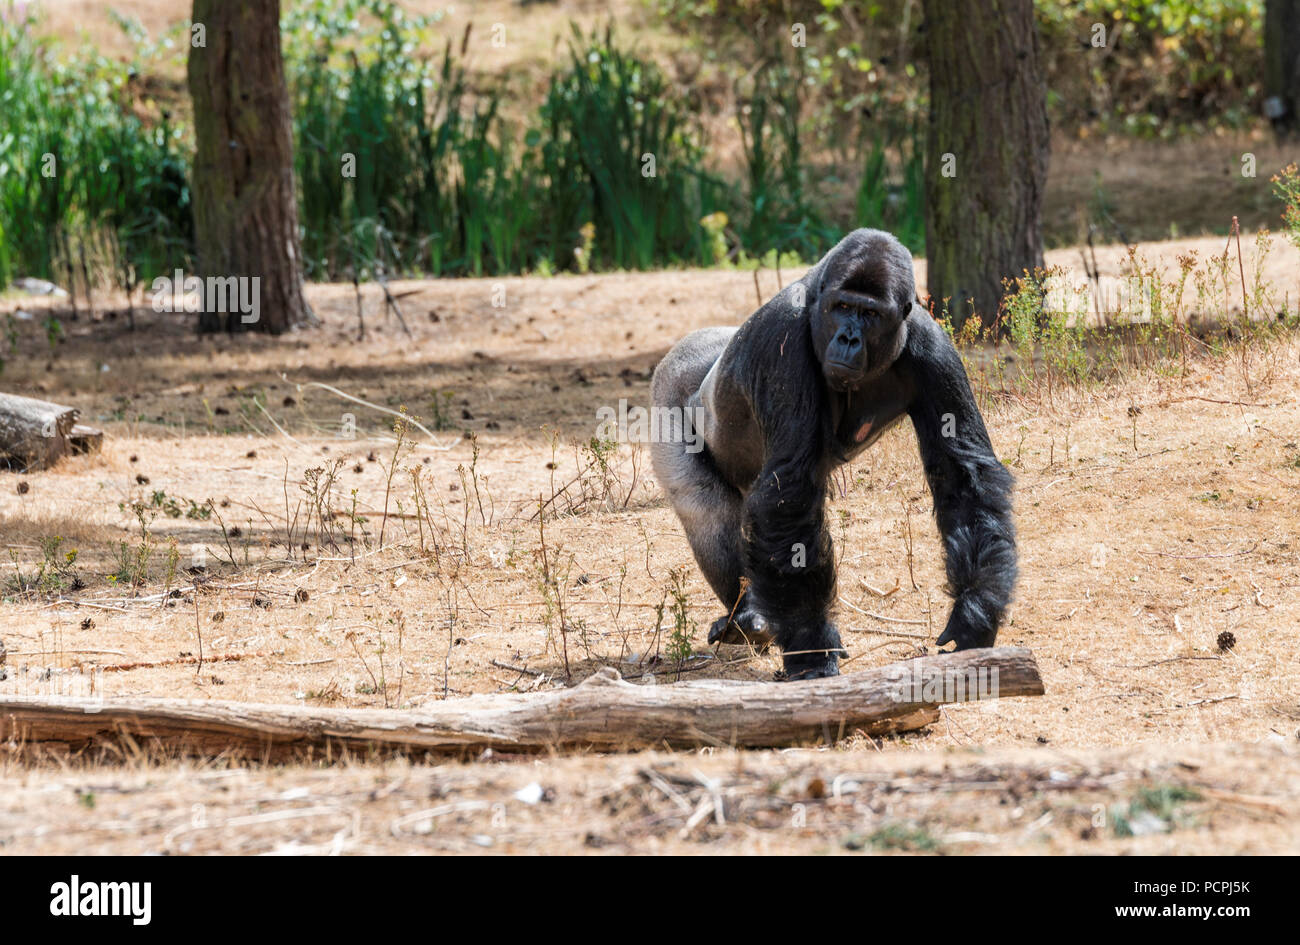 Grand singe gorille montrant sa puissance à l'extérieur dans l'été chaud et sec Banque D'Images